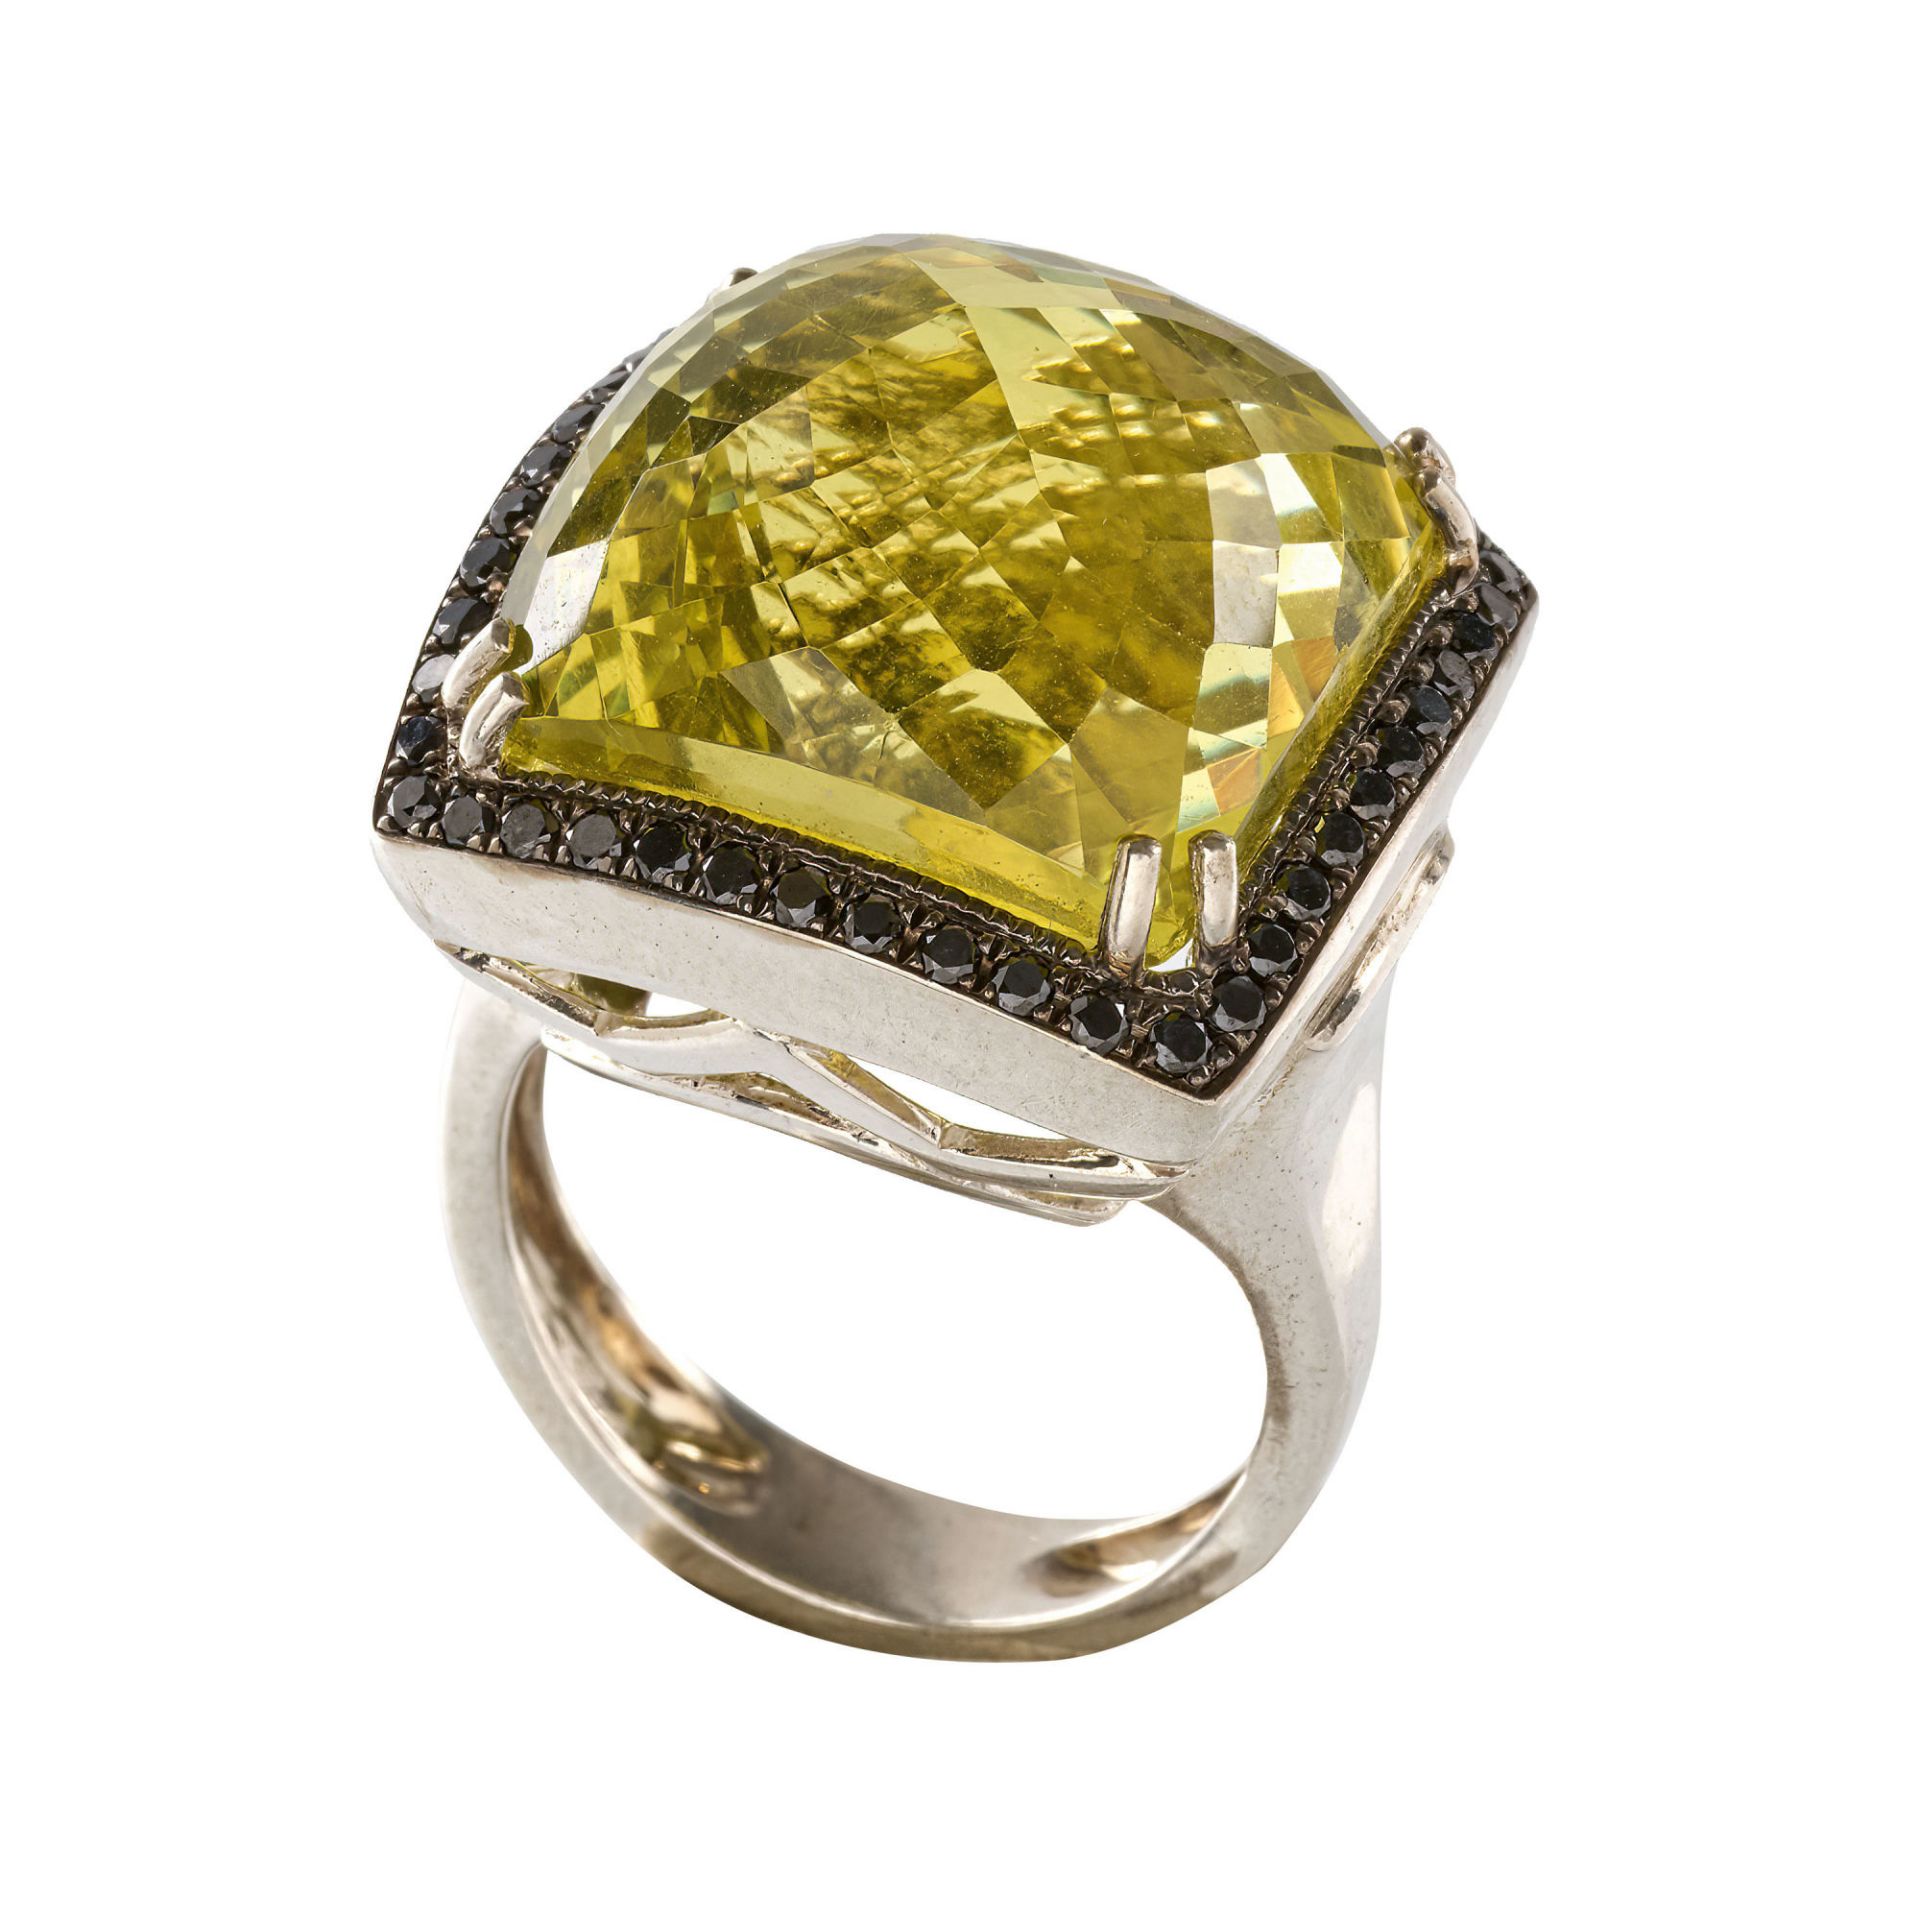 LEMONQUARZ-DIAMANT-RING / Lemon quartz-diamond-ring 